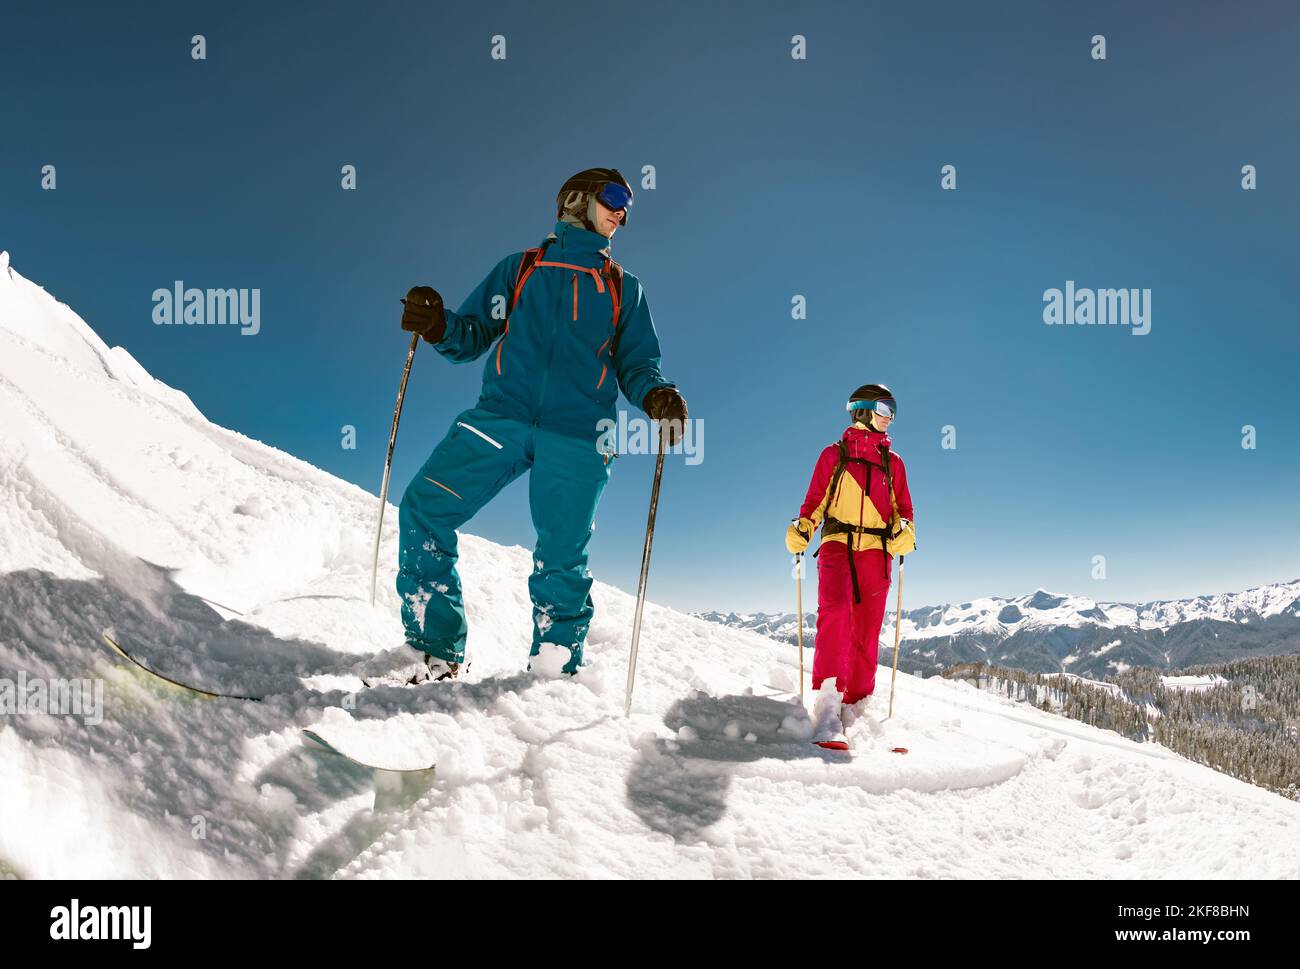 Dos jóvenes esquiadores están de pie en la pista de esquí. Foto de stock